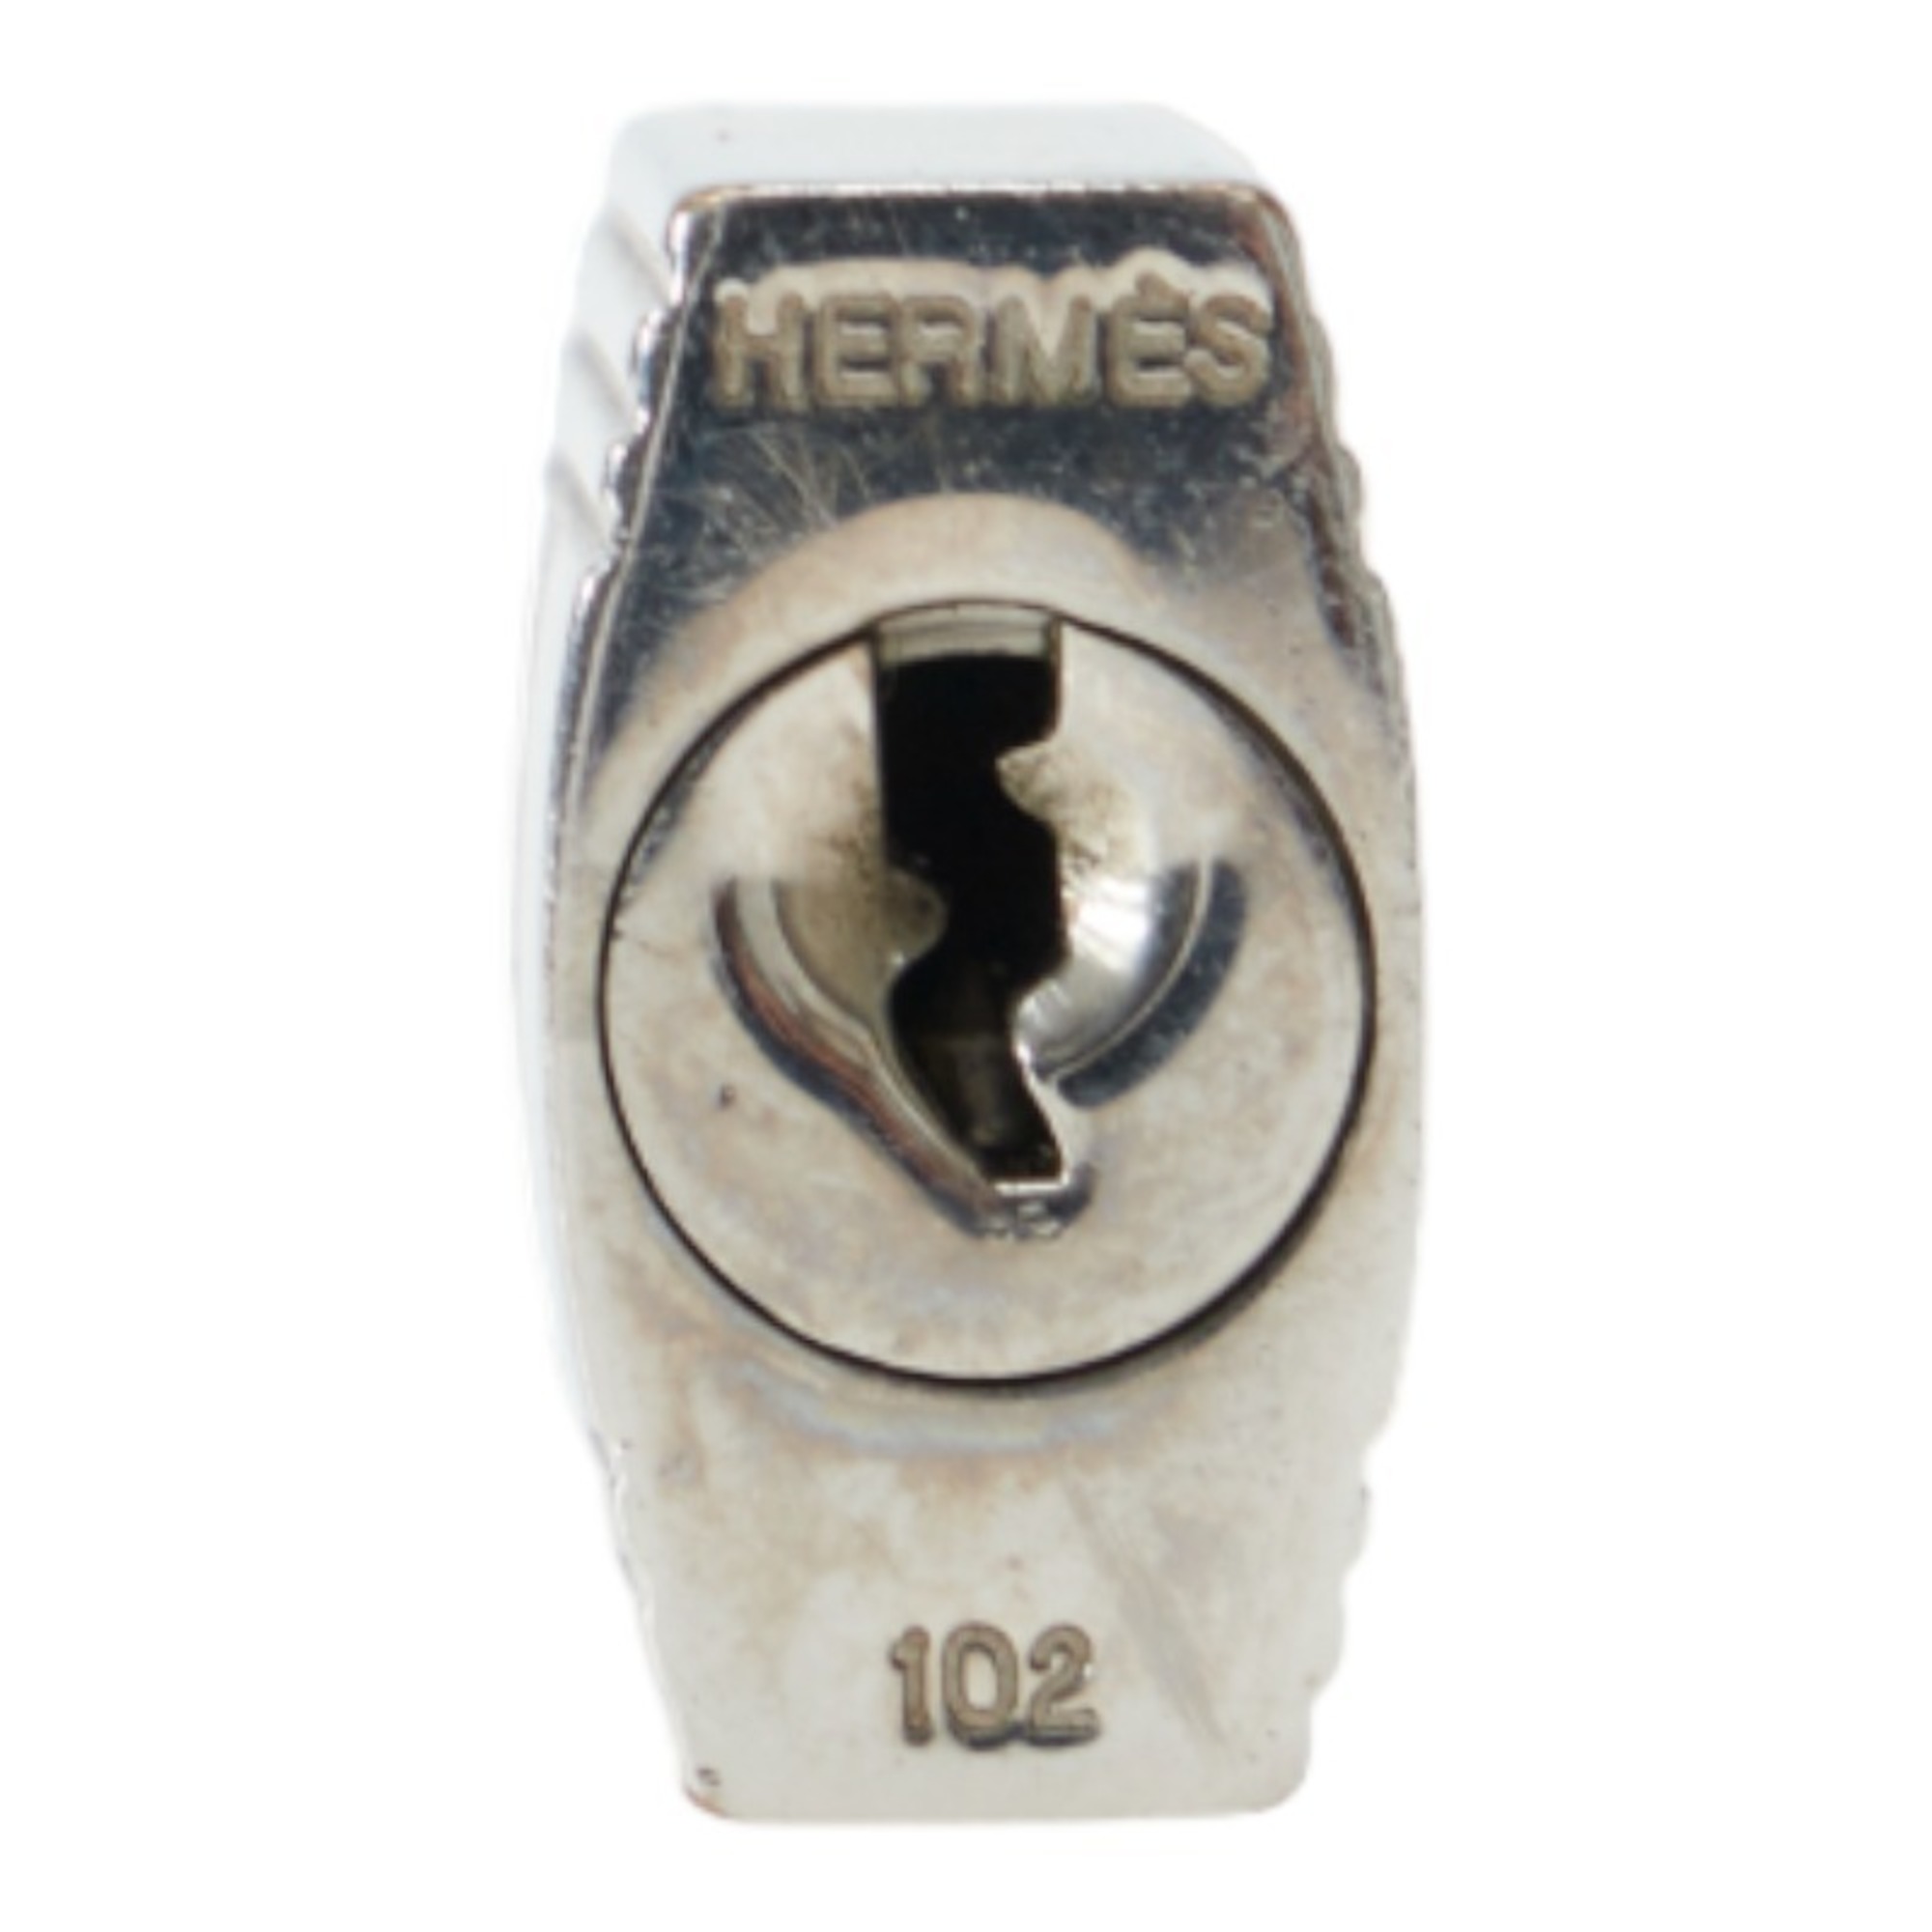 Hermes Cadena Key Set 102 Silver Metal Ladies HERMES